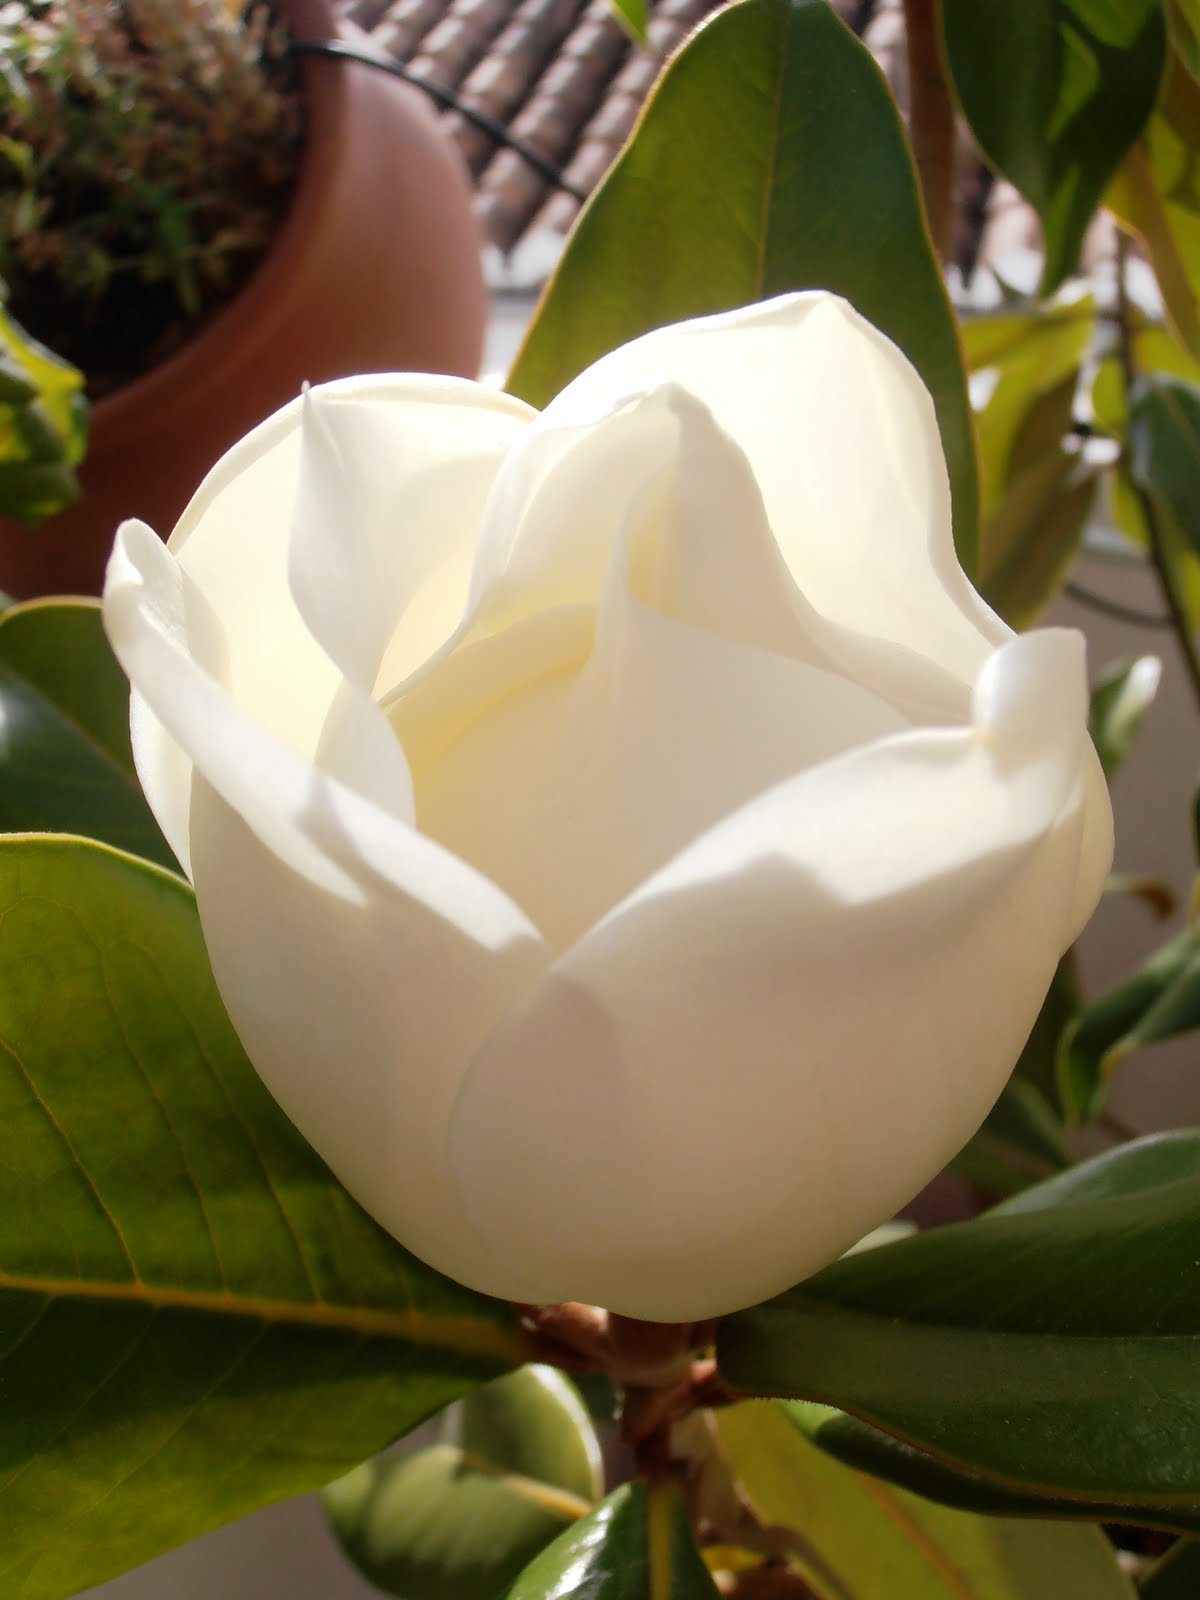 En macetas: El magnolio